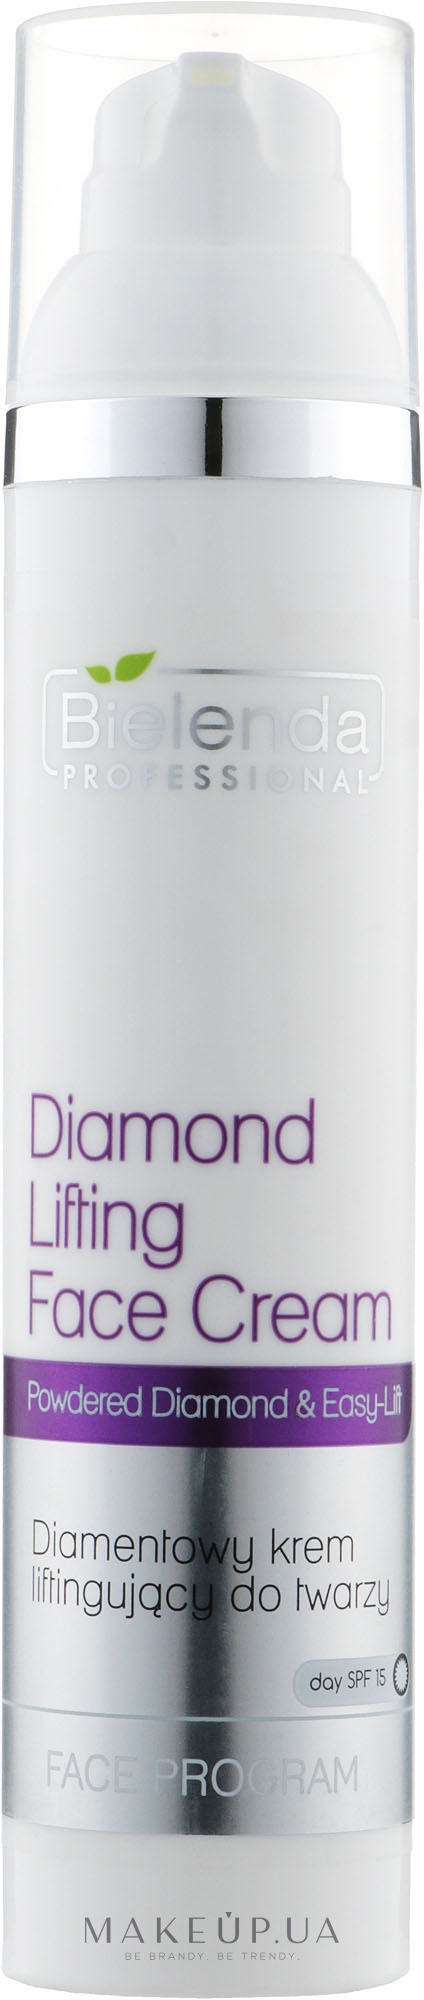 Алмазный крем с эффектом лифтинга - Bielenda Professional Face Program Diamond Lifting Face Cream — фото 100ml